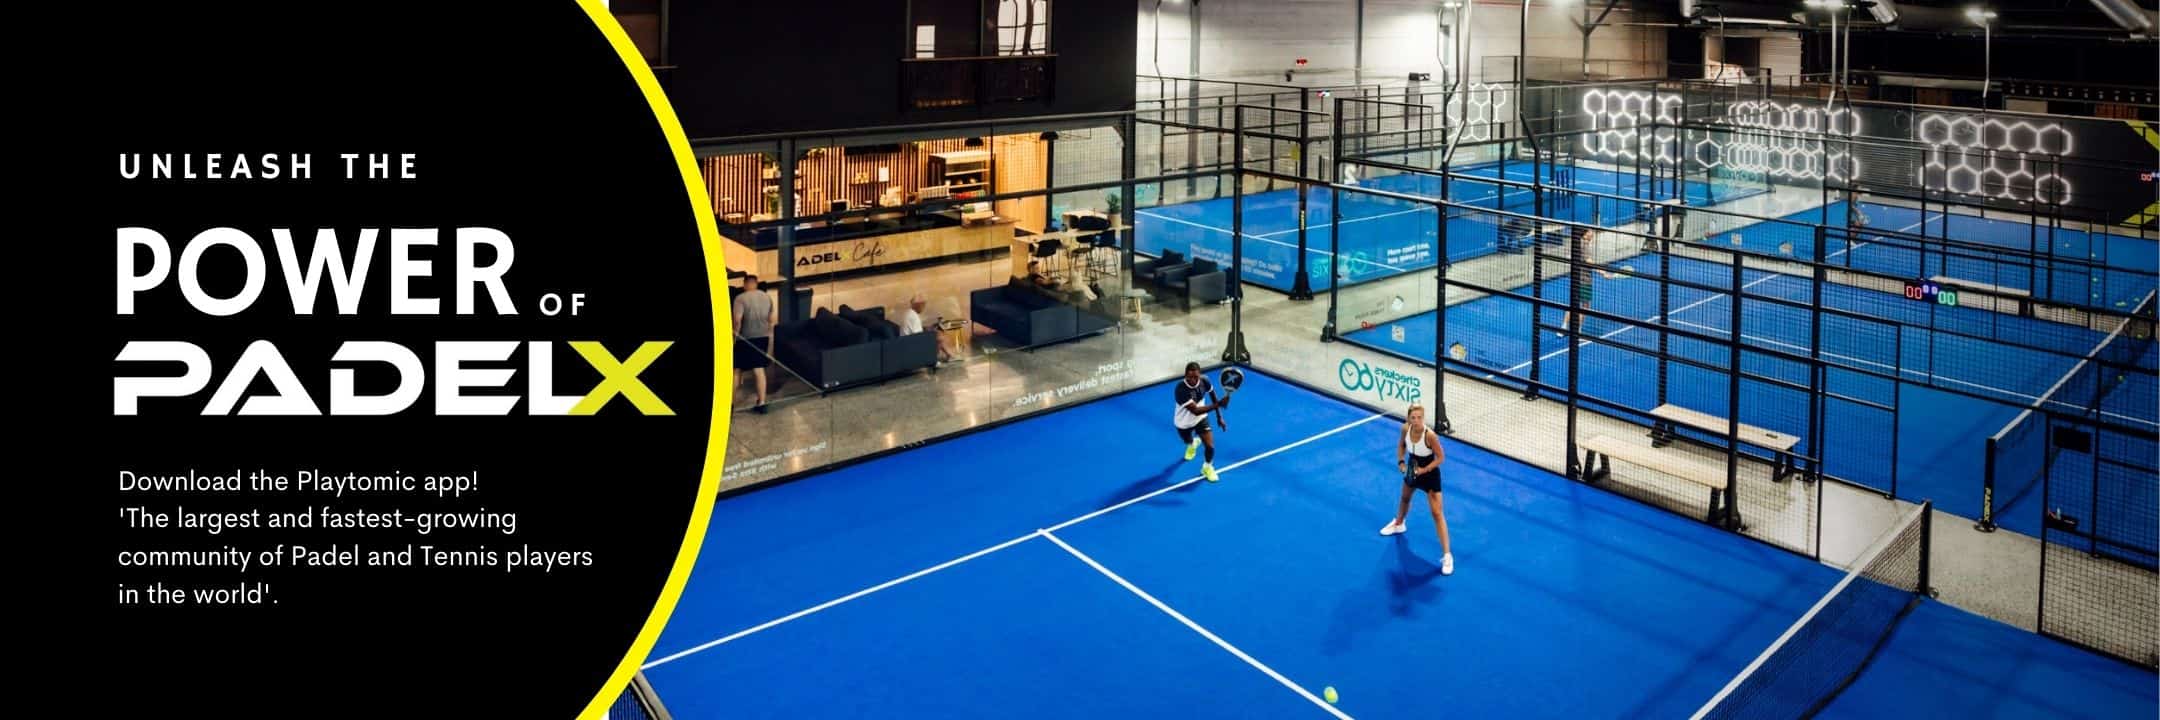 padel courts indoor padel 